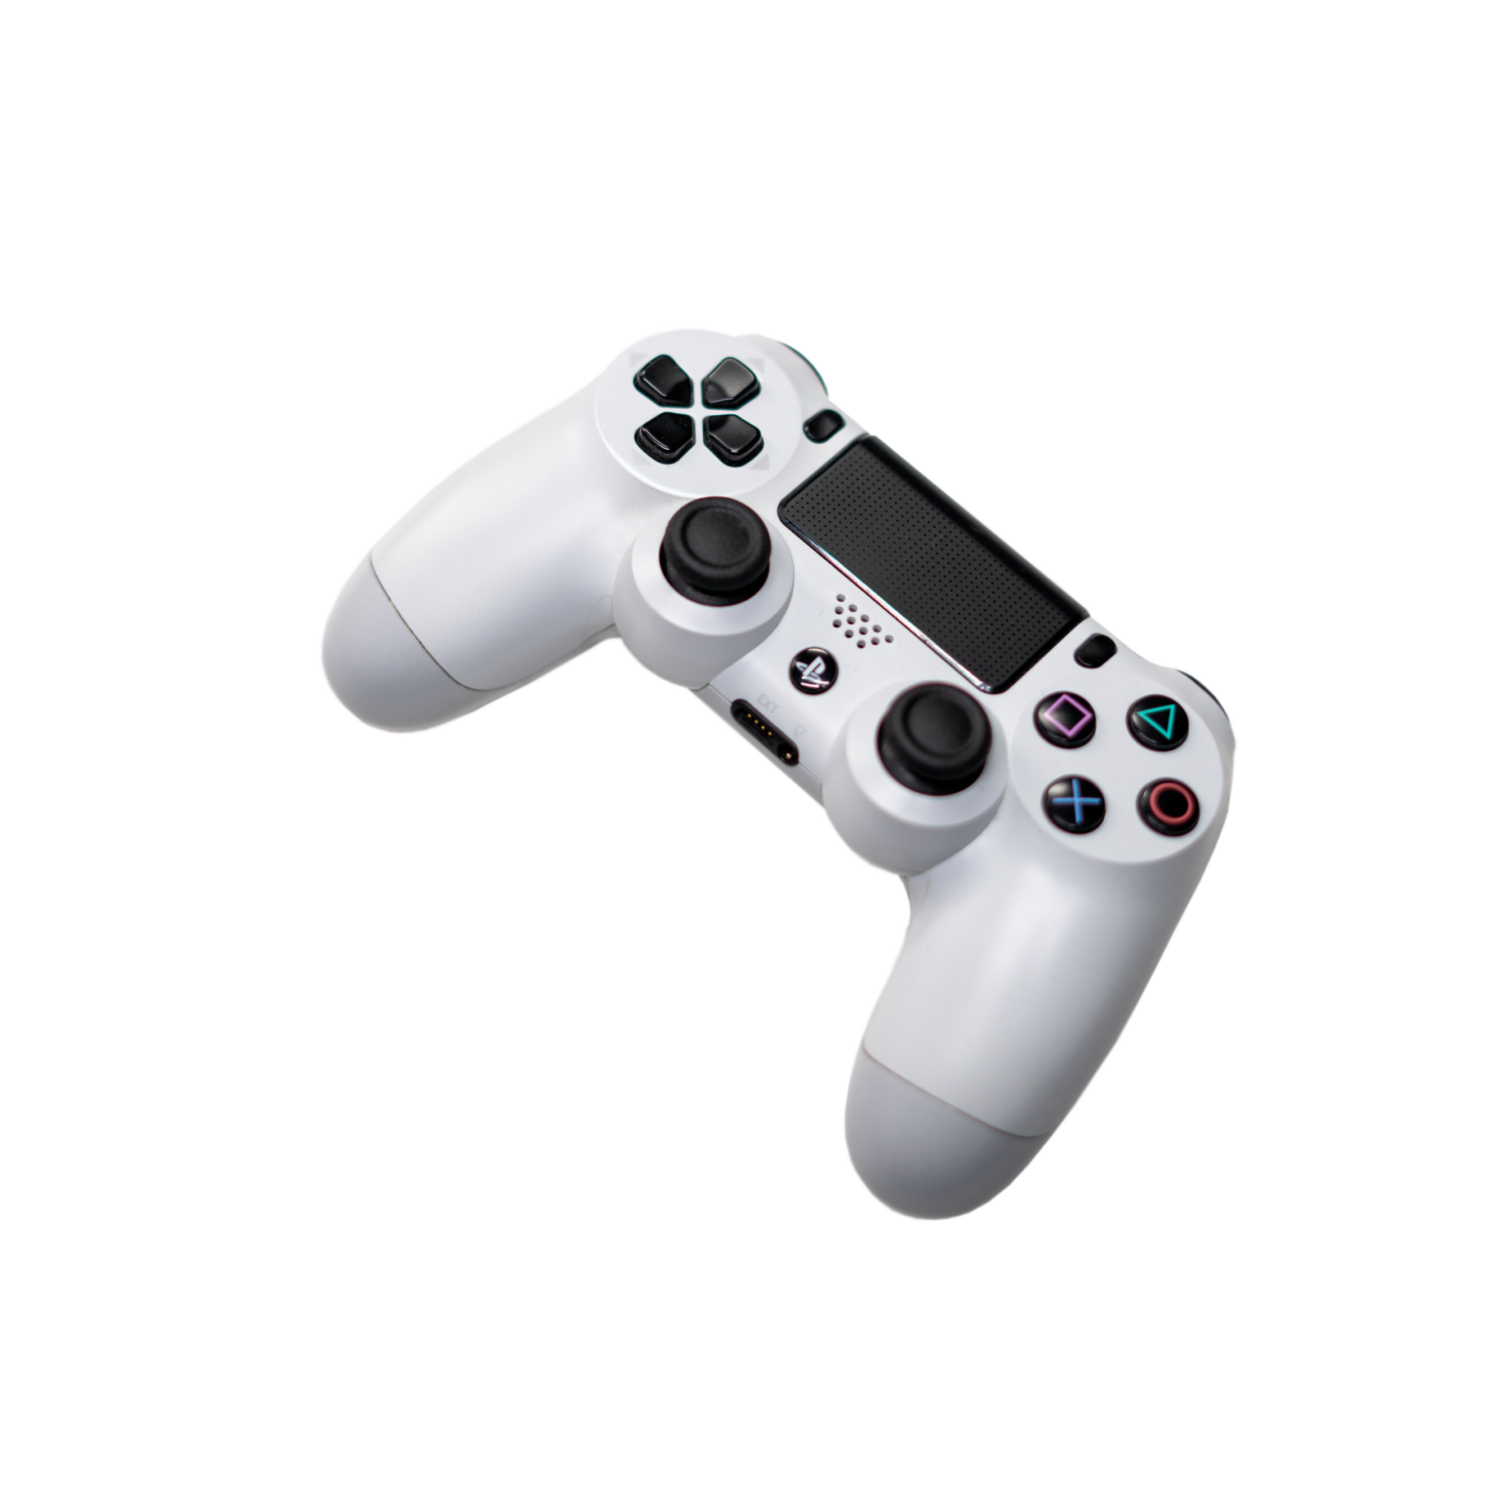 Fabel Danser Produktivitet SAMPLE. DualShock 4 Wireless Controller for PlayStation 4